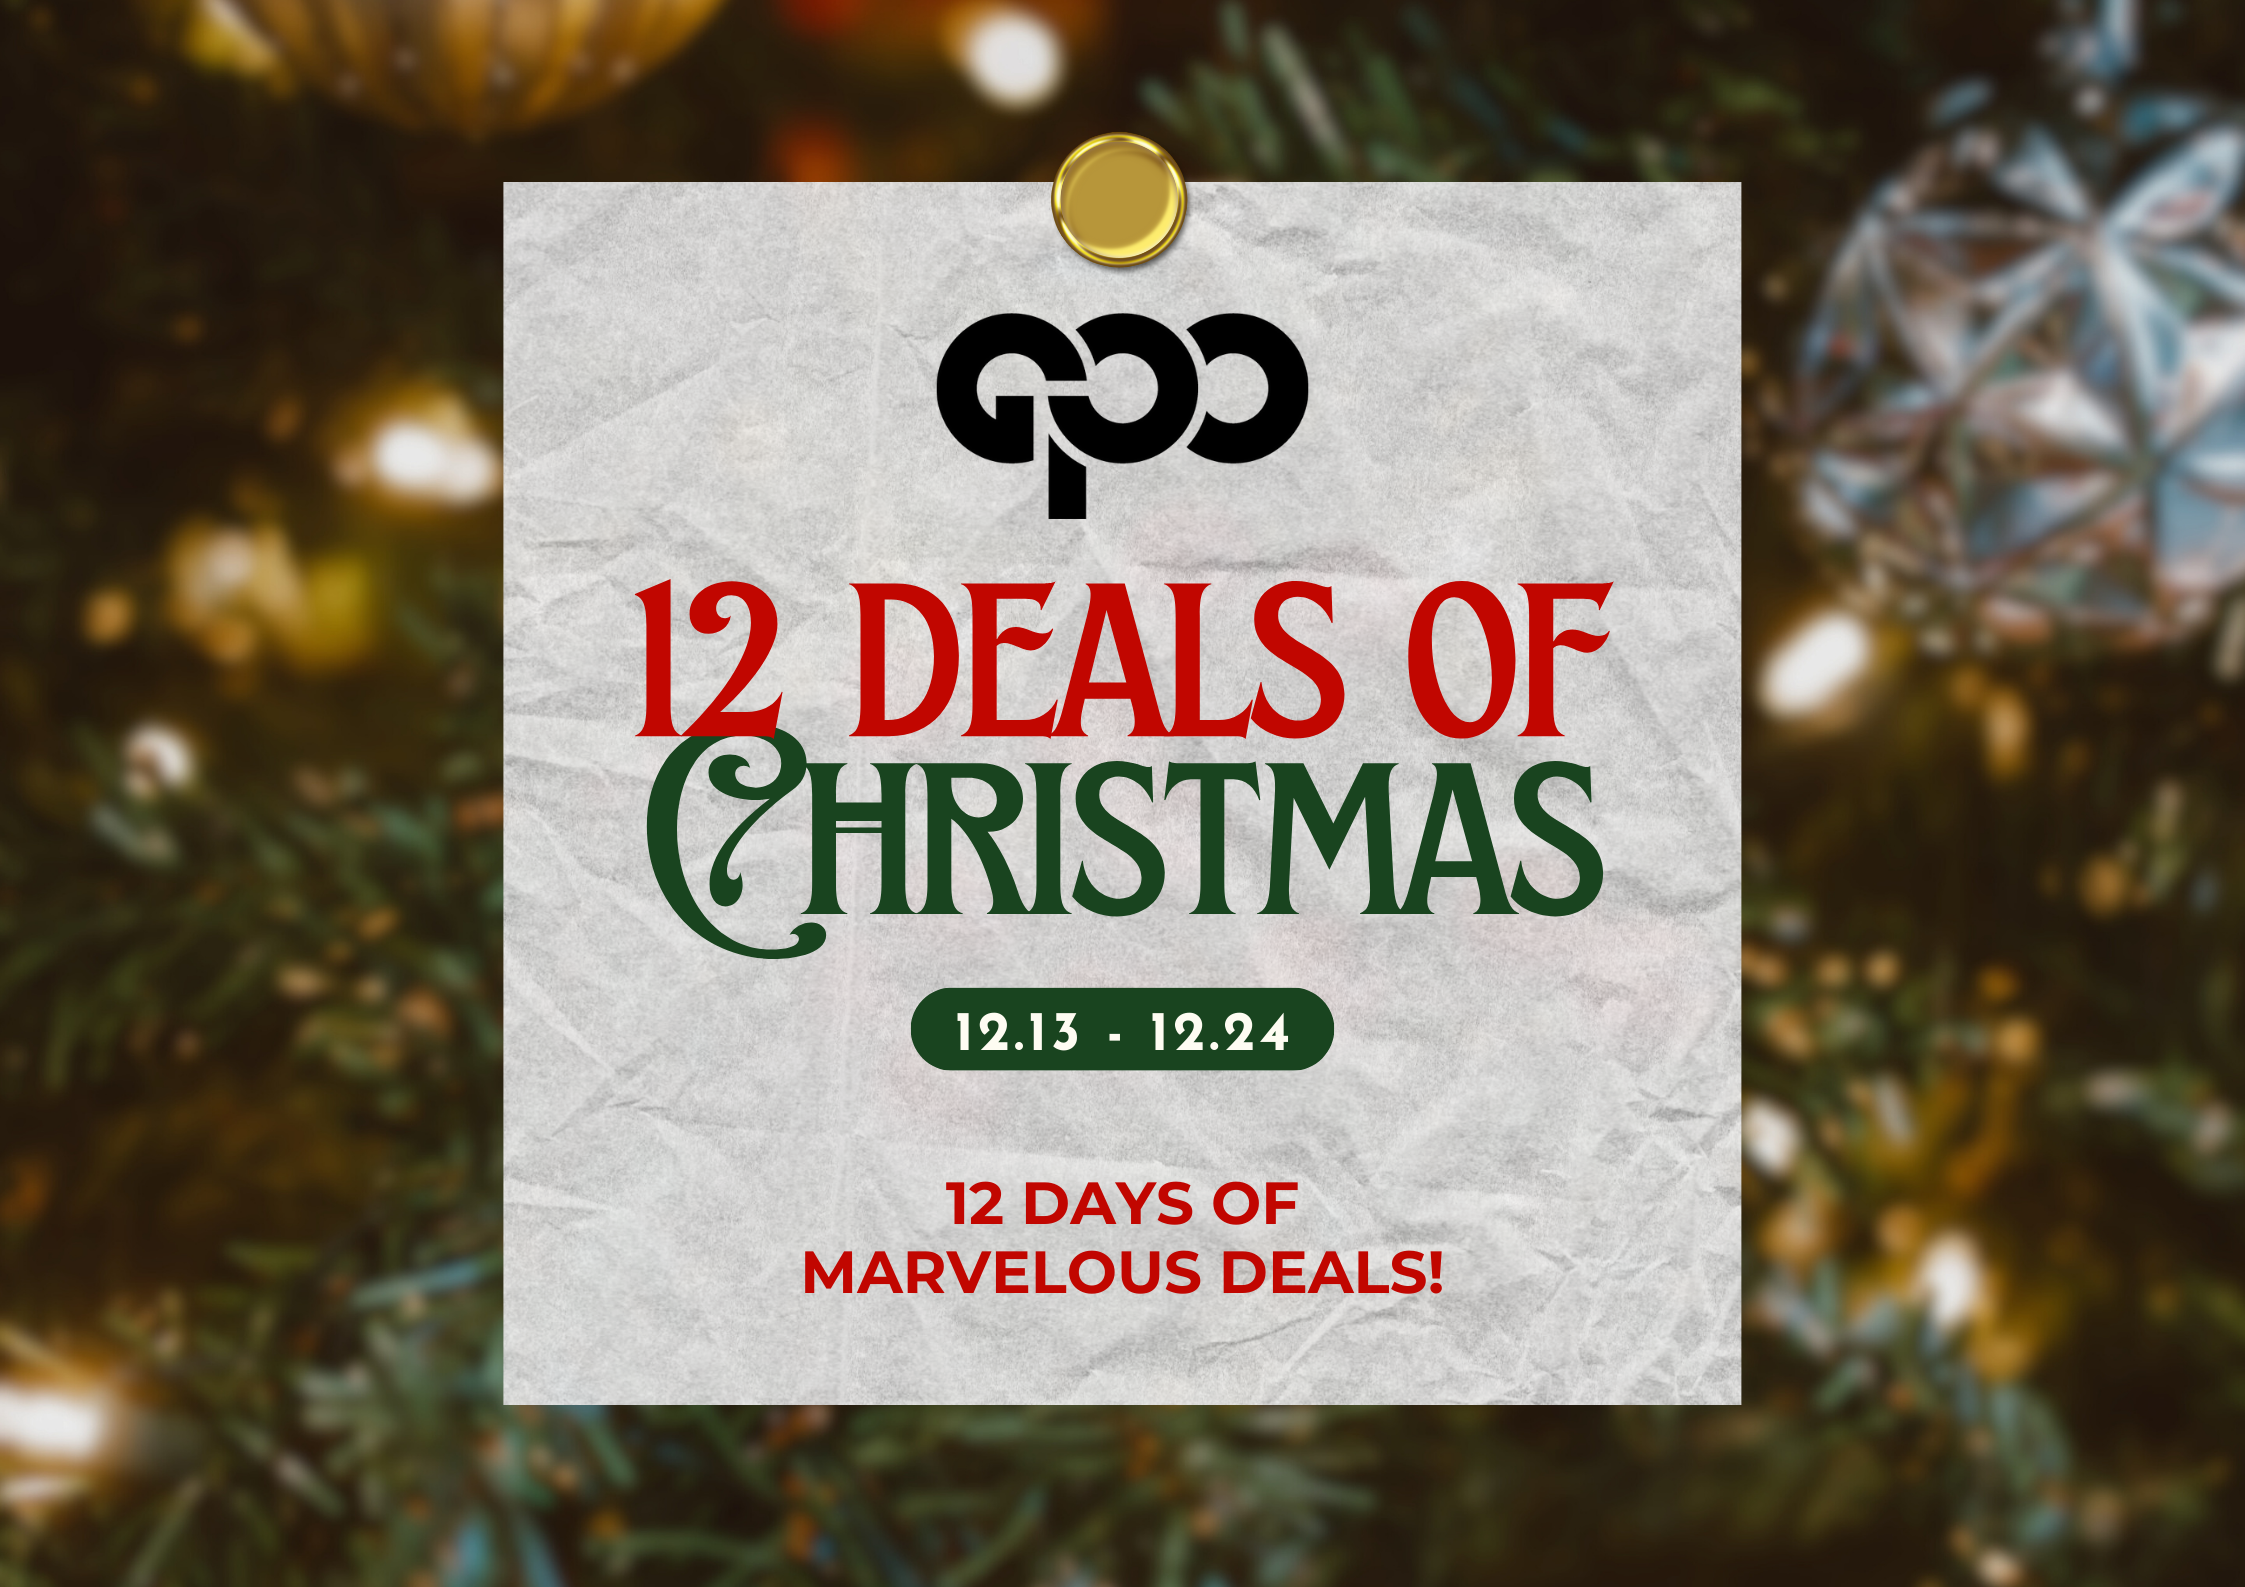 12 Deals of Christmas (December 21): Guess?